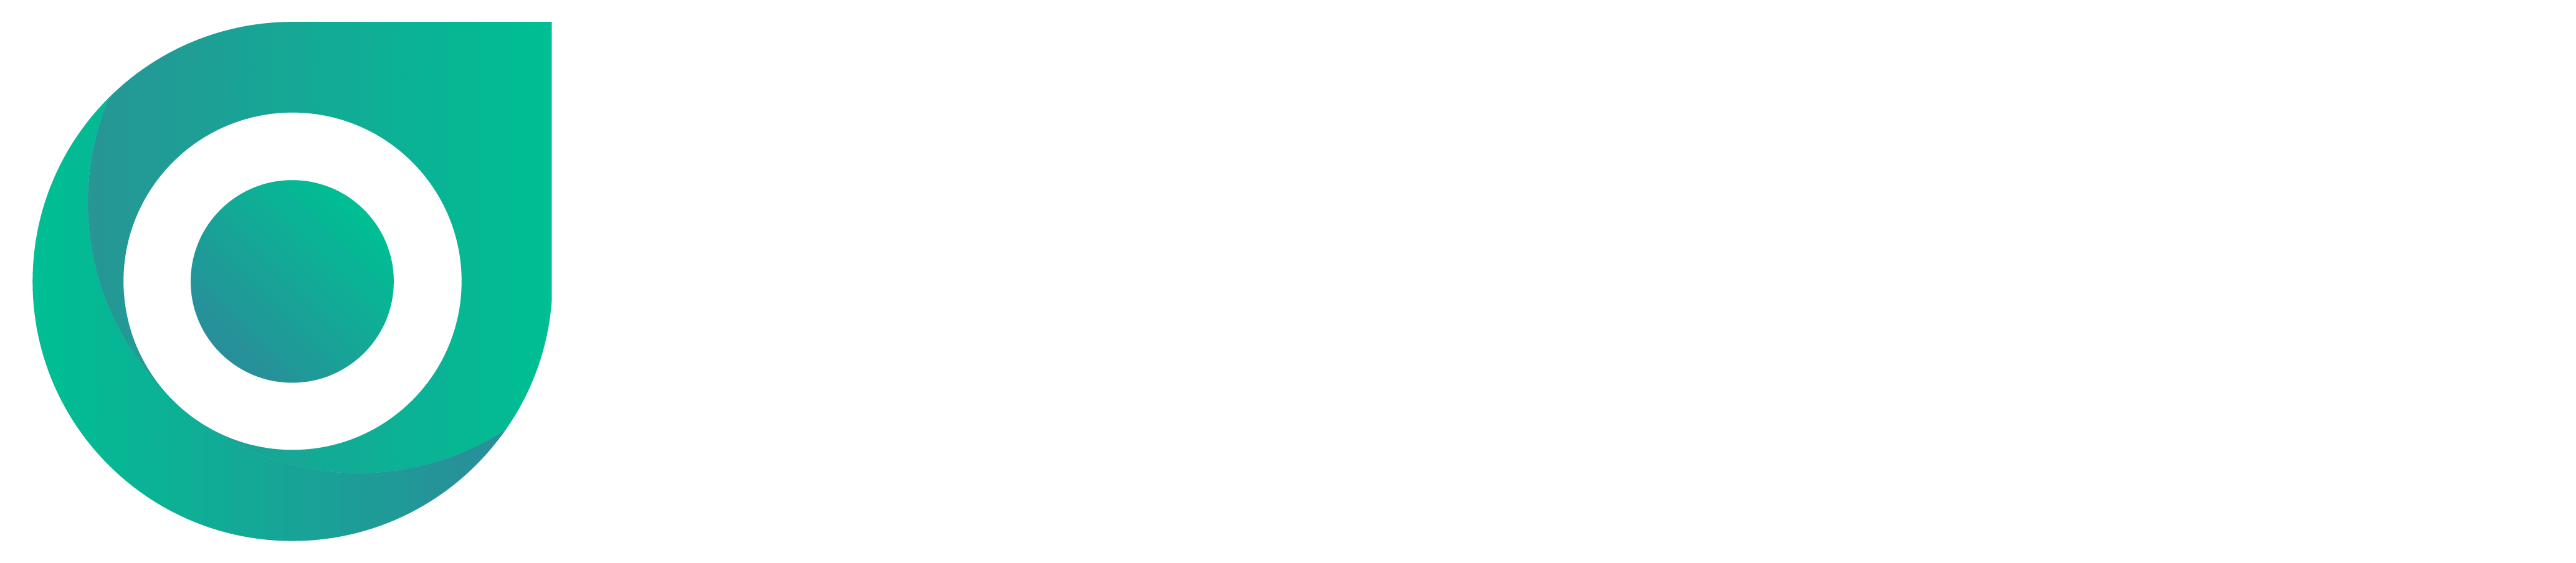 radaropus-logo-white